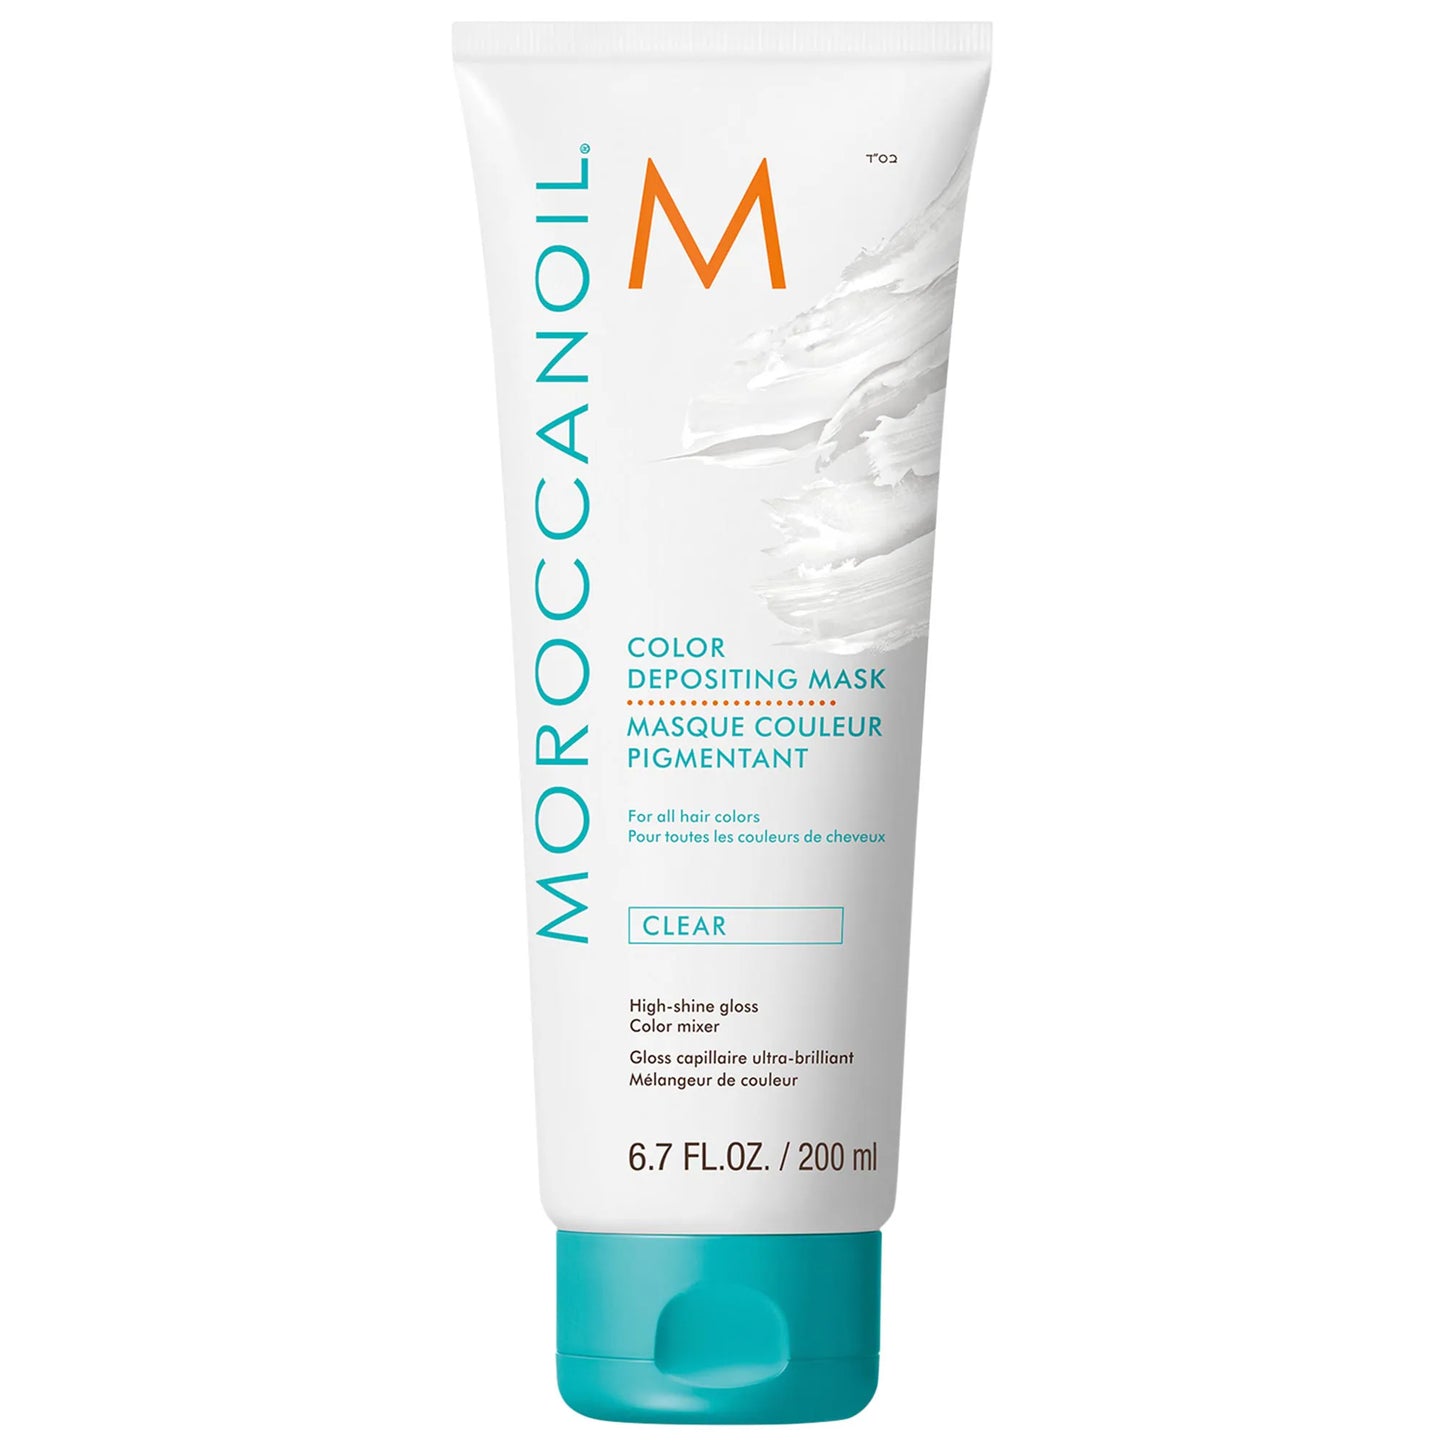 Masque couleur pigmentant CLEAR 200ML | Moroccanoil